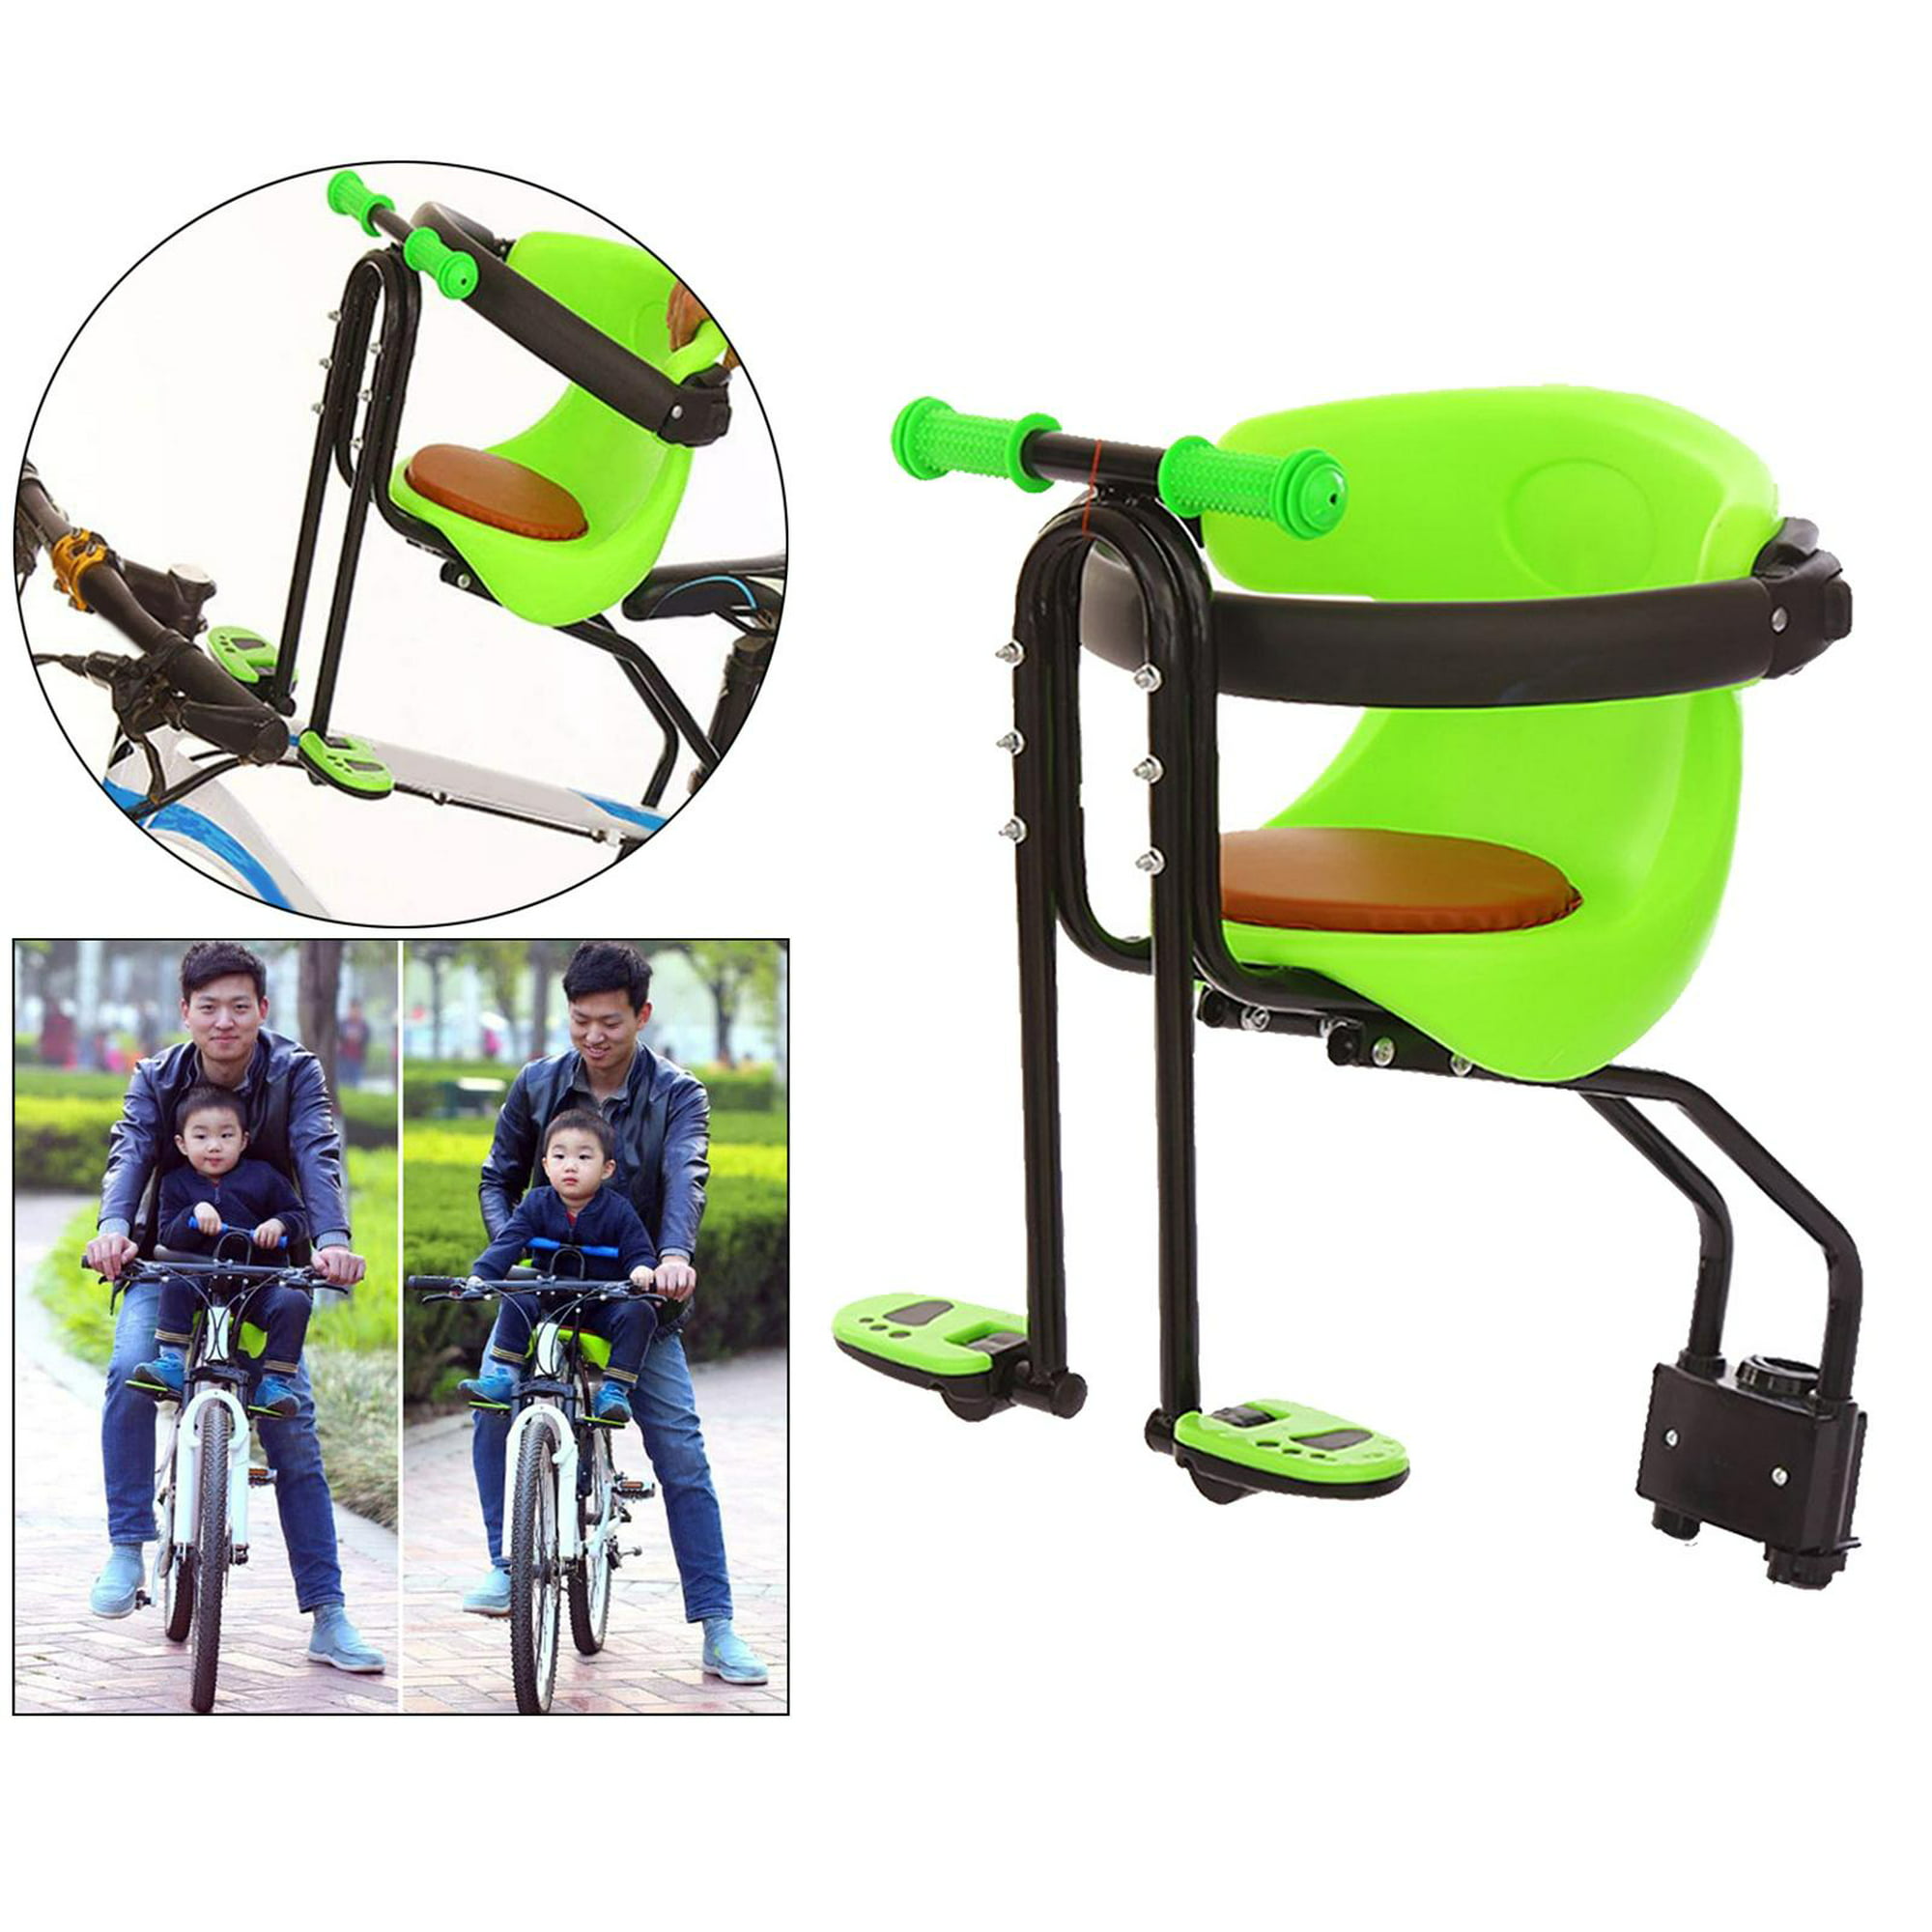 MOMO Asiento de Seguridad para llevar niño en bicicleta con Luz